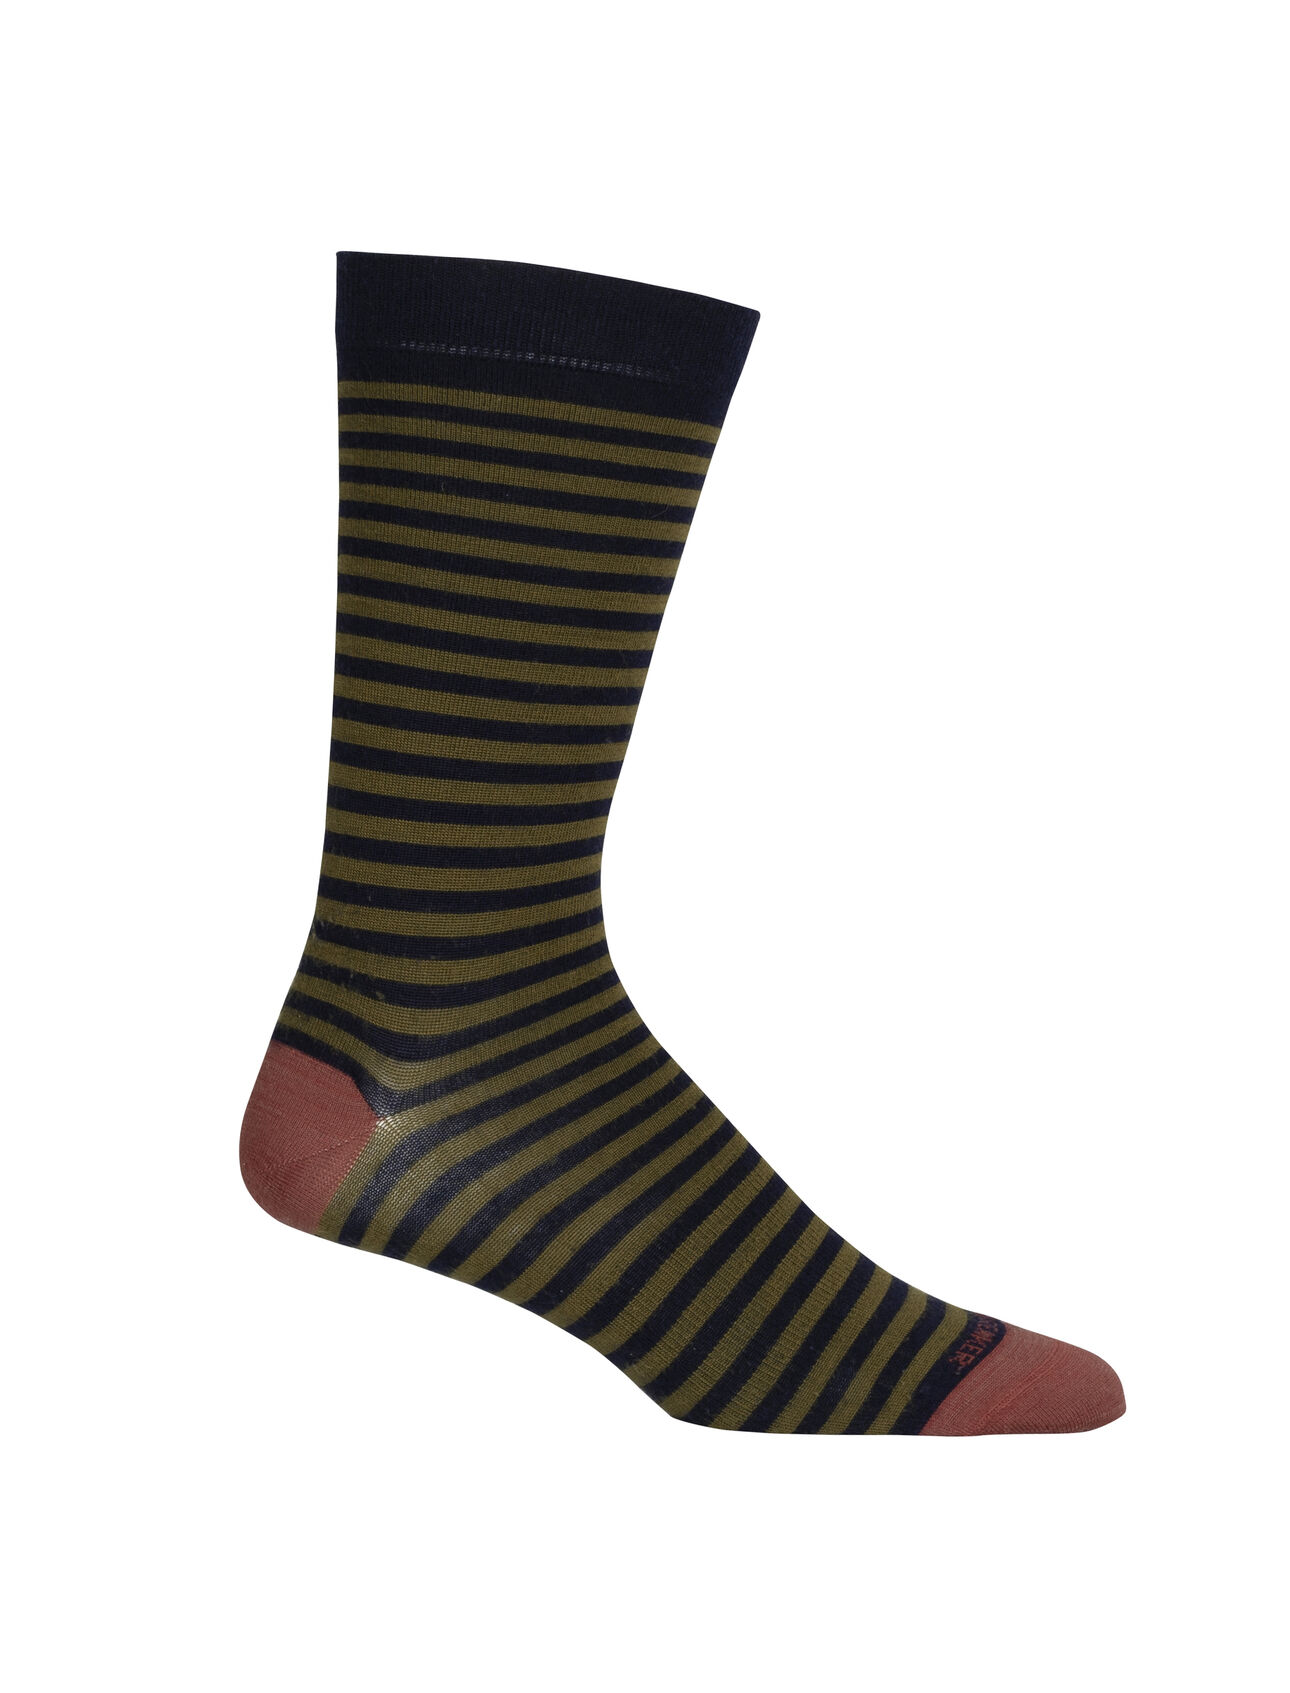 Pánské Ponožky Merino Lifestyle Fine Gauge Crew Stripe Lehké ponožky Lifestyle Fine Gauge Crew Stripe jsou ideální pro každodenní nošení a kombinují pohodlí prvotřídní merino vlny s odolnou konstrukcí.